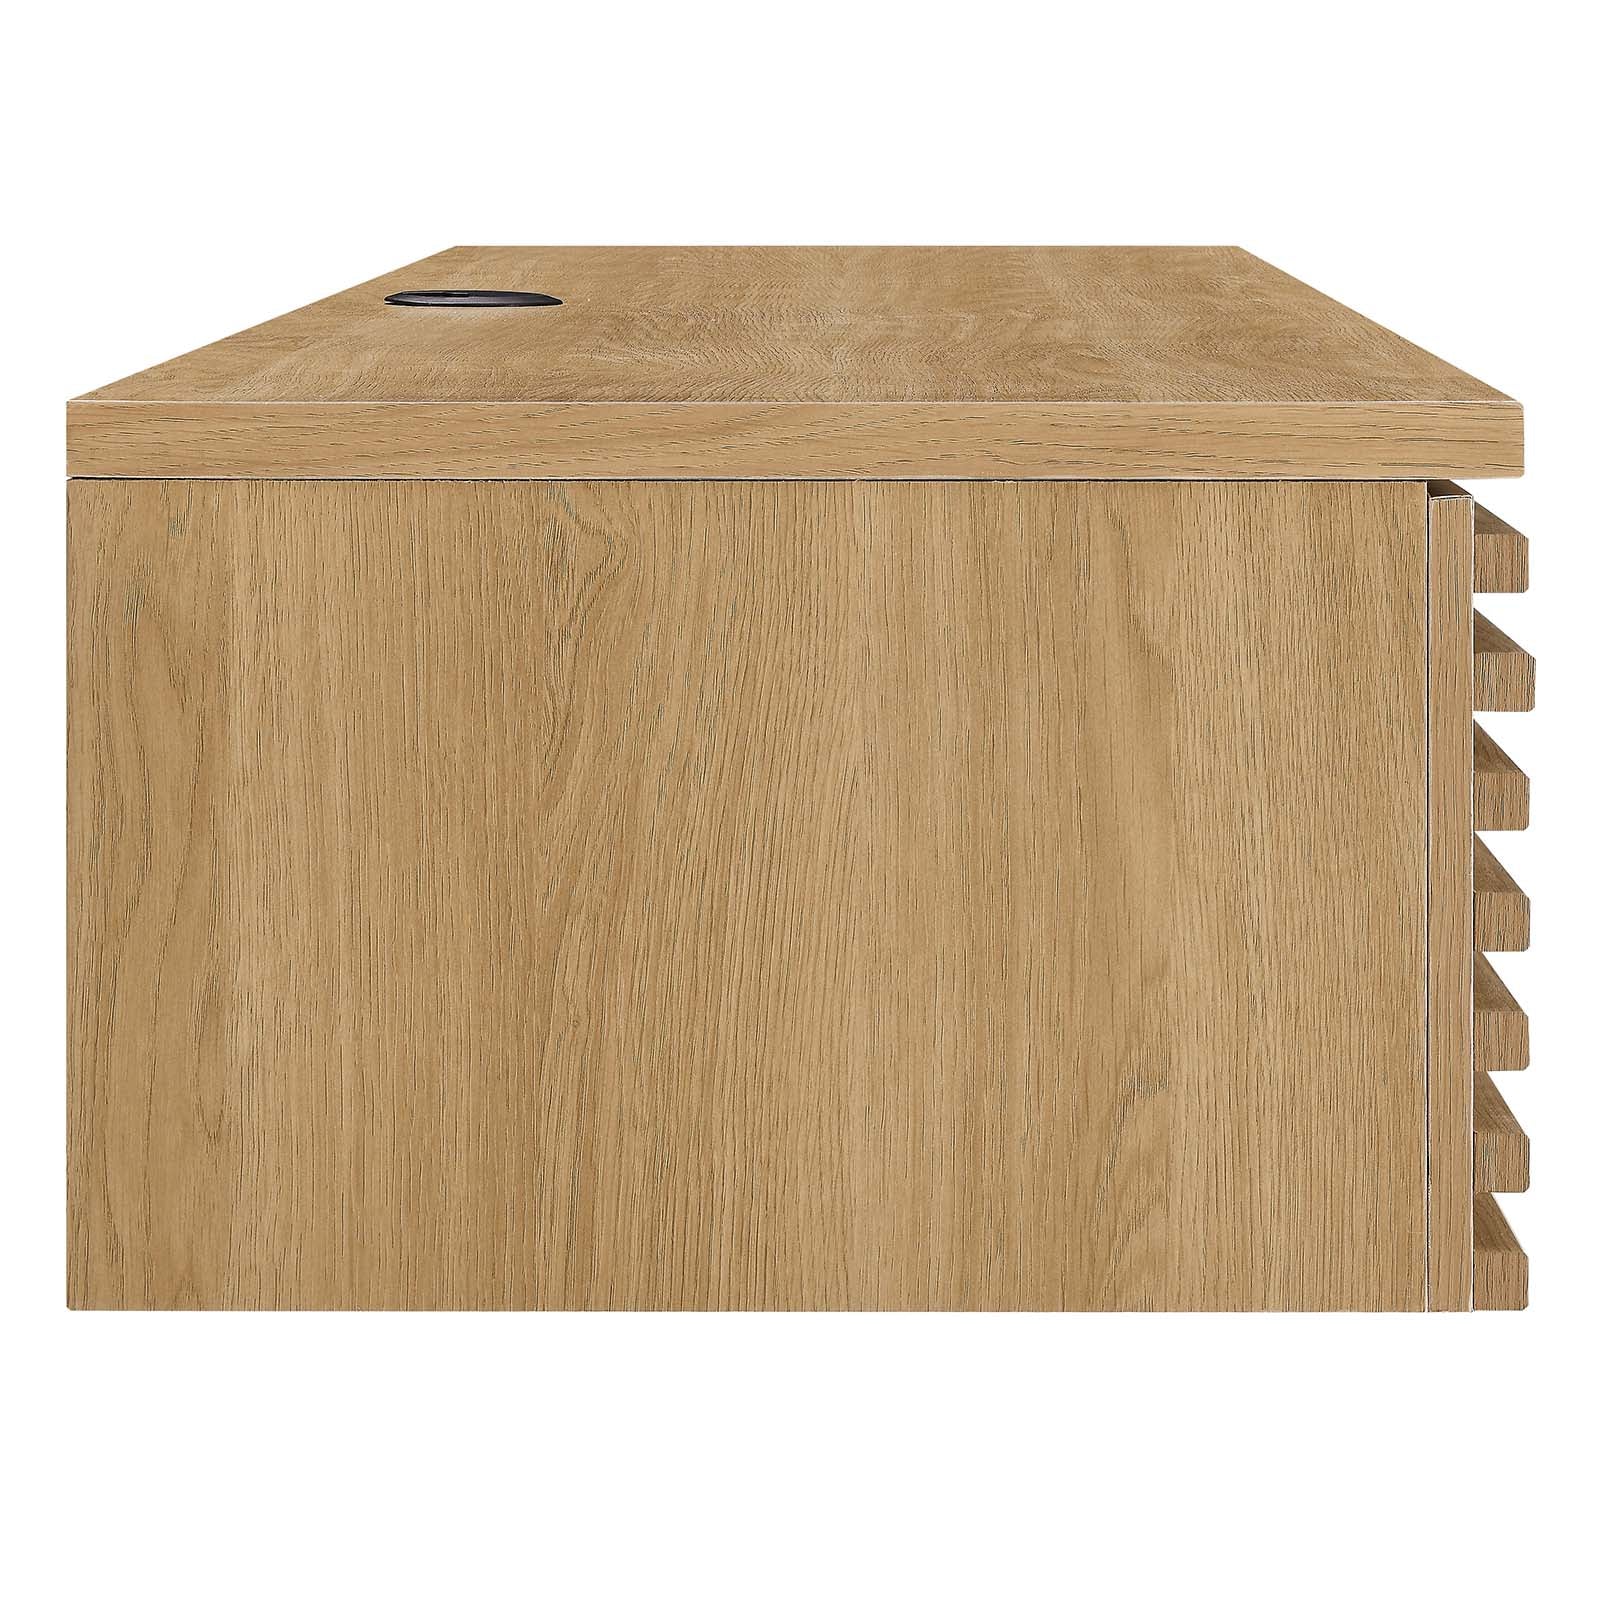 Modway Desks - Render Wall Mount Wood Office Desk Oak